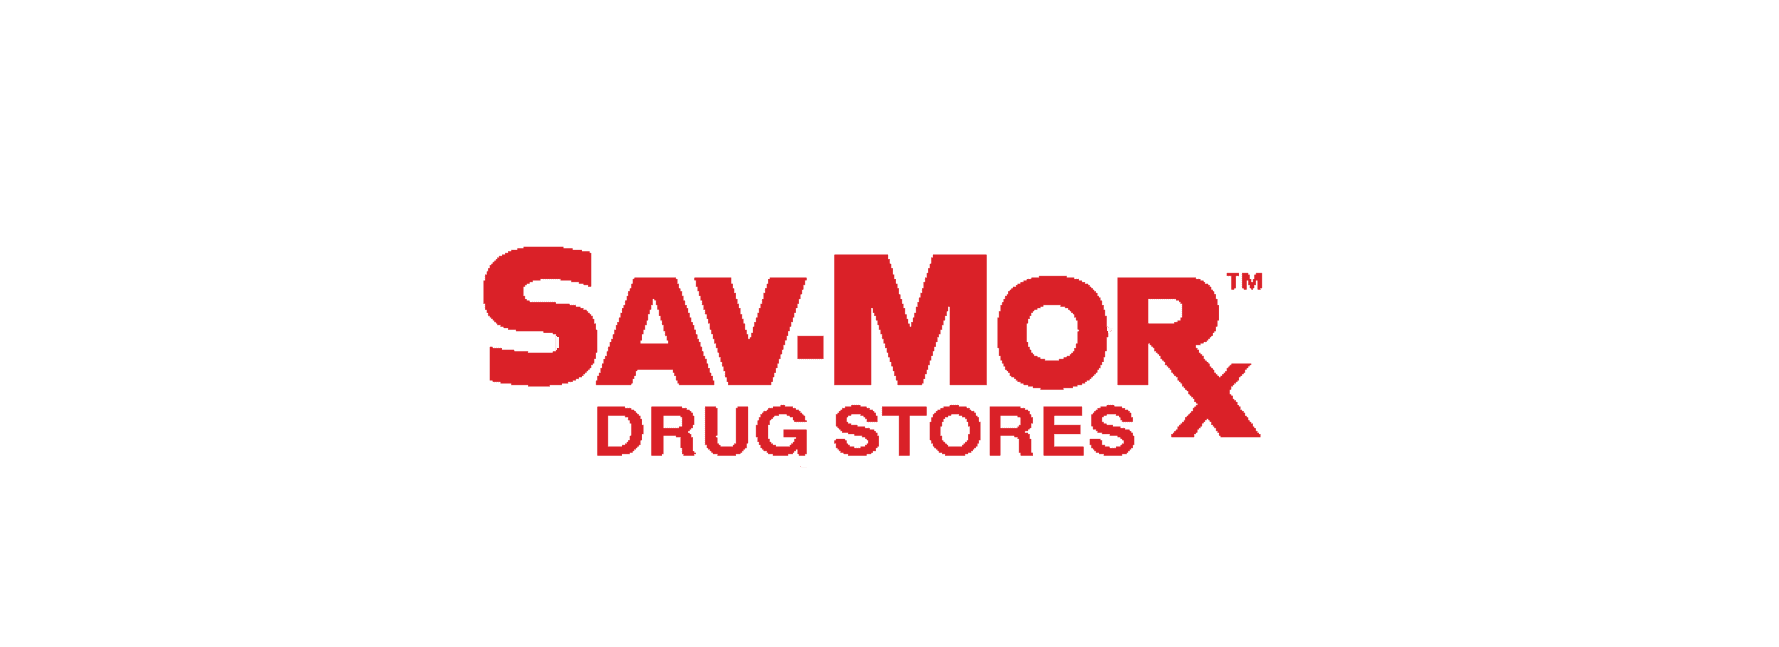 Sav-Mor Drug Store Selects Digital Pharmacist